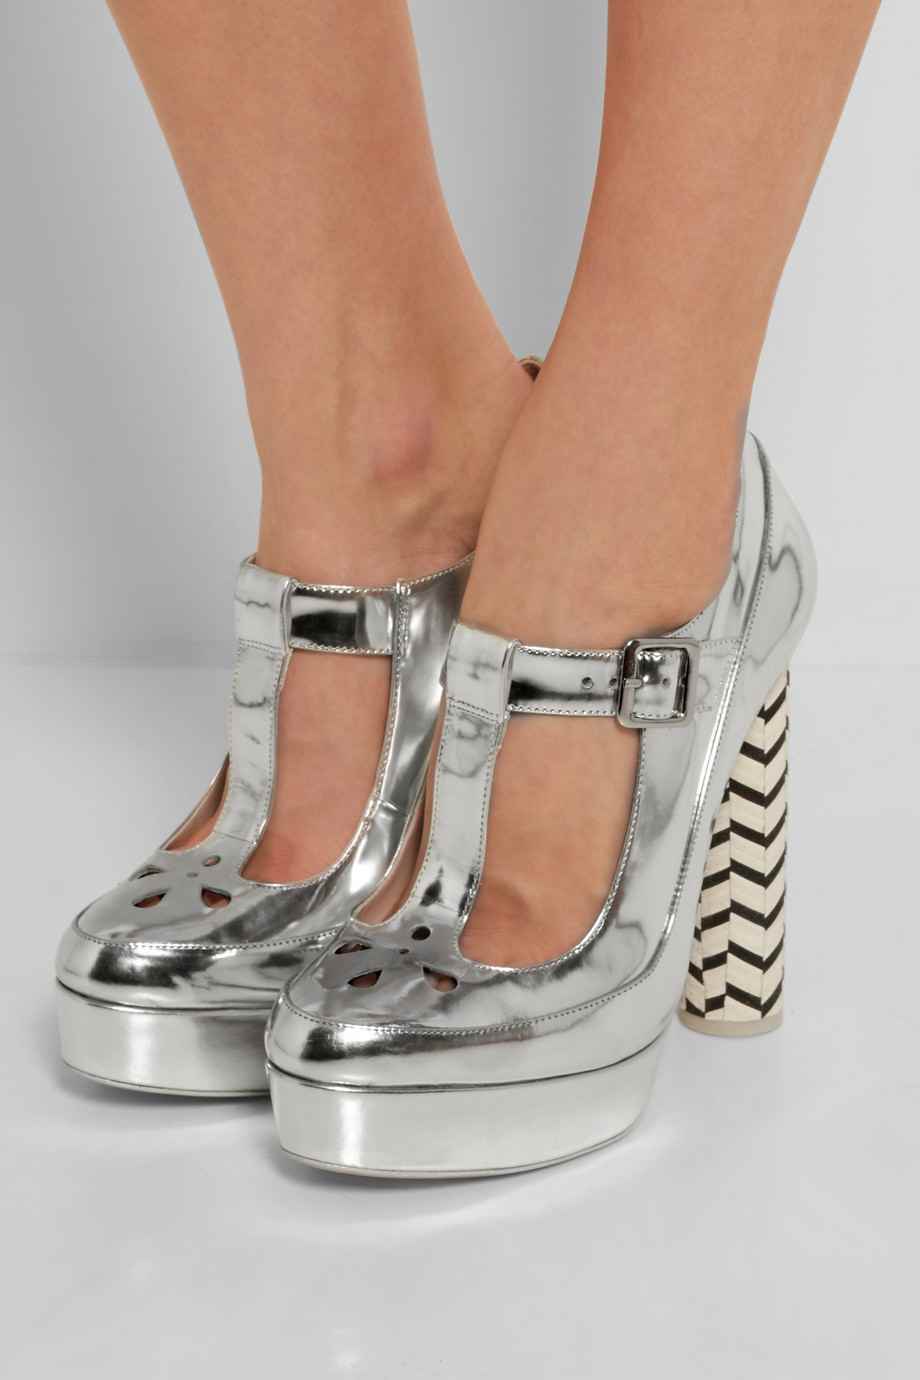 Sophia Webster - sandales à talons (485€)